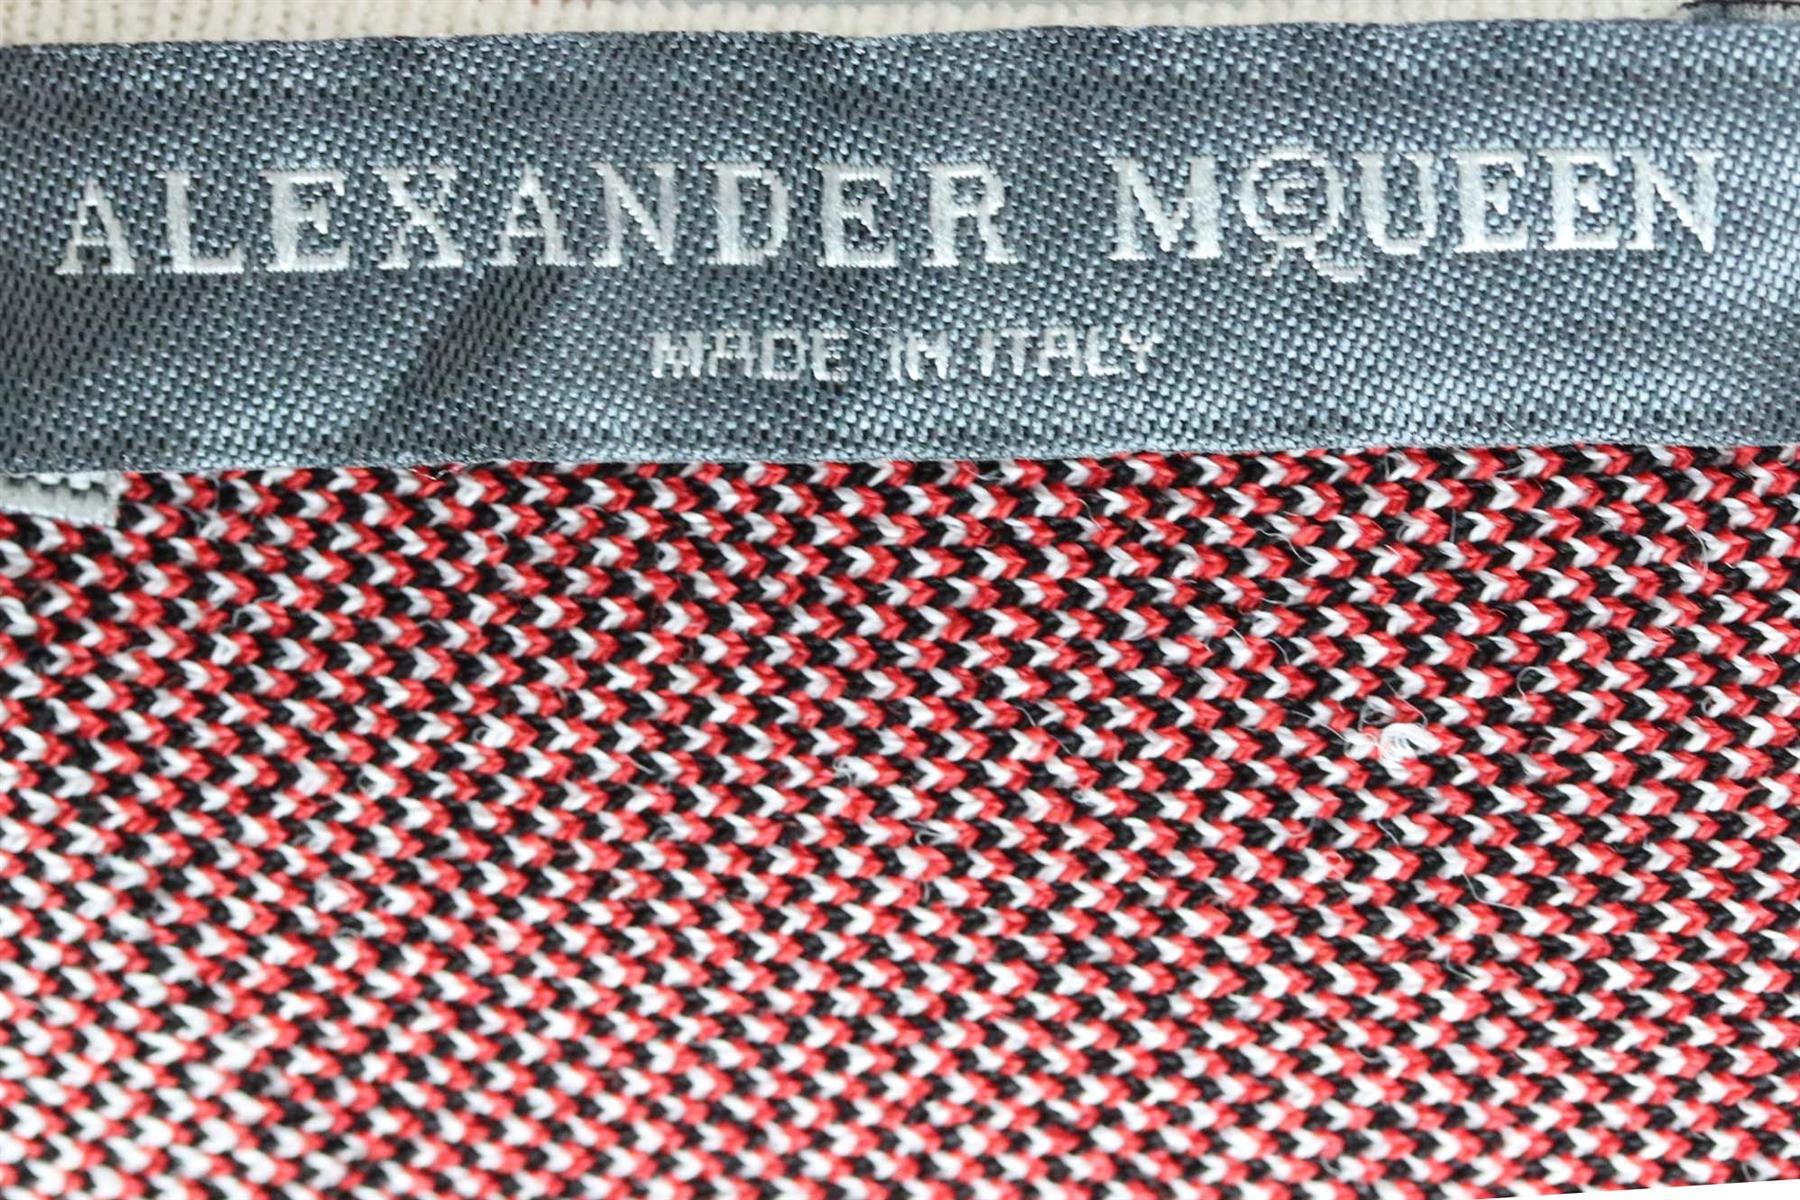 Gray Alexander Mcqueen Jacquard Knit Mini Dress Xsmall